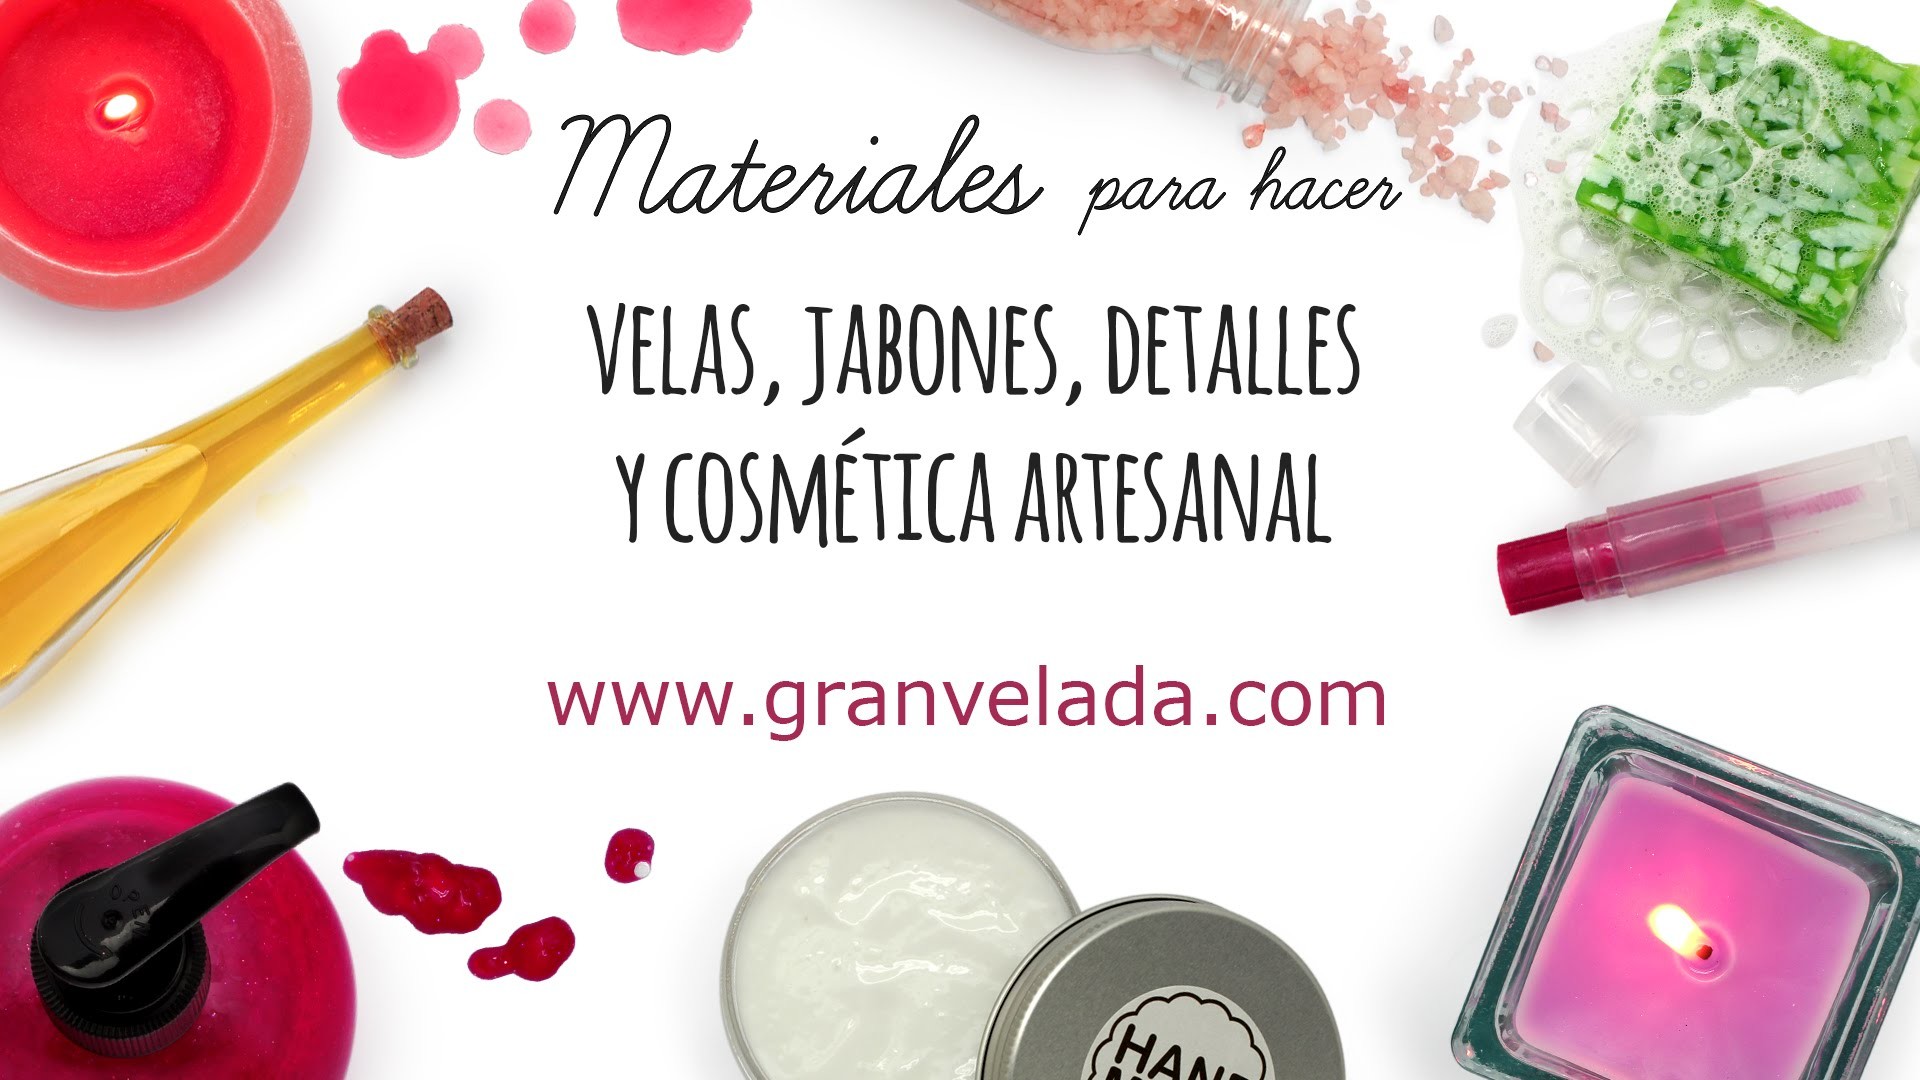 GranVelada.com tienda online de materiales para hacer cremas, cosmética casera, jabones DIY y velas